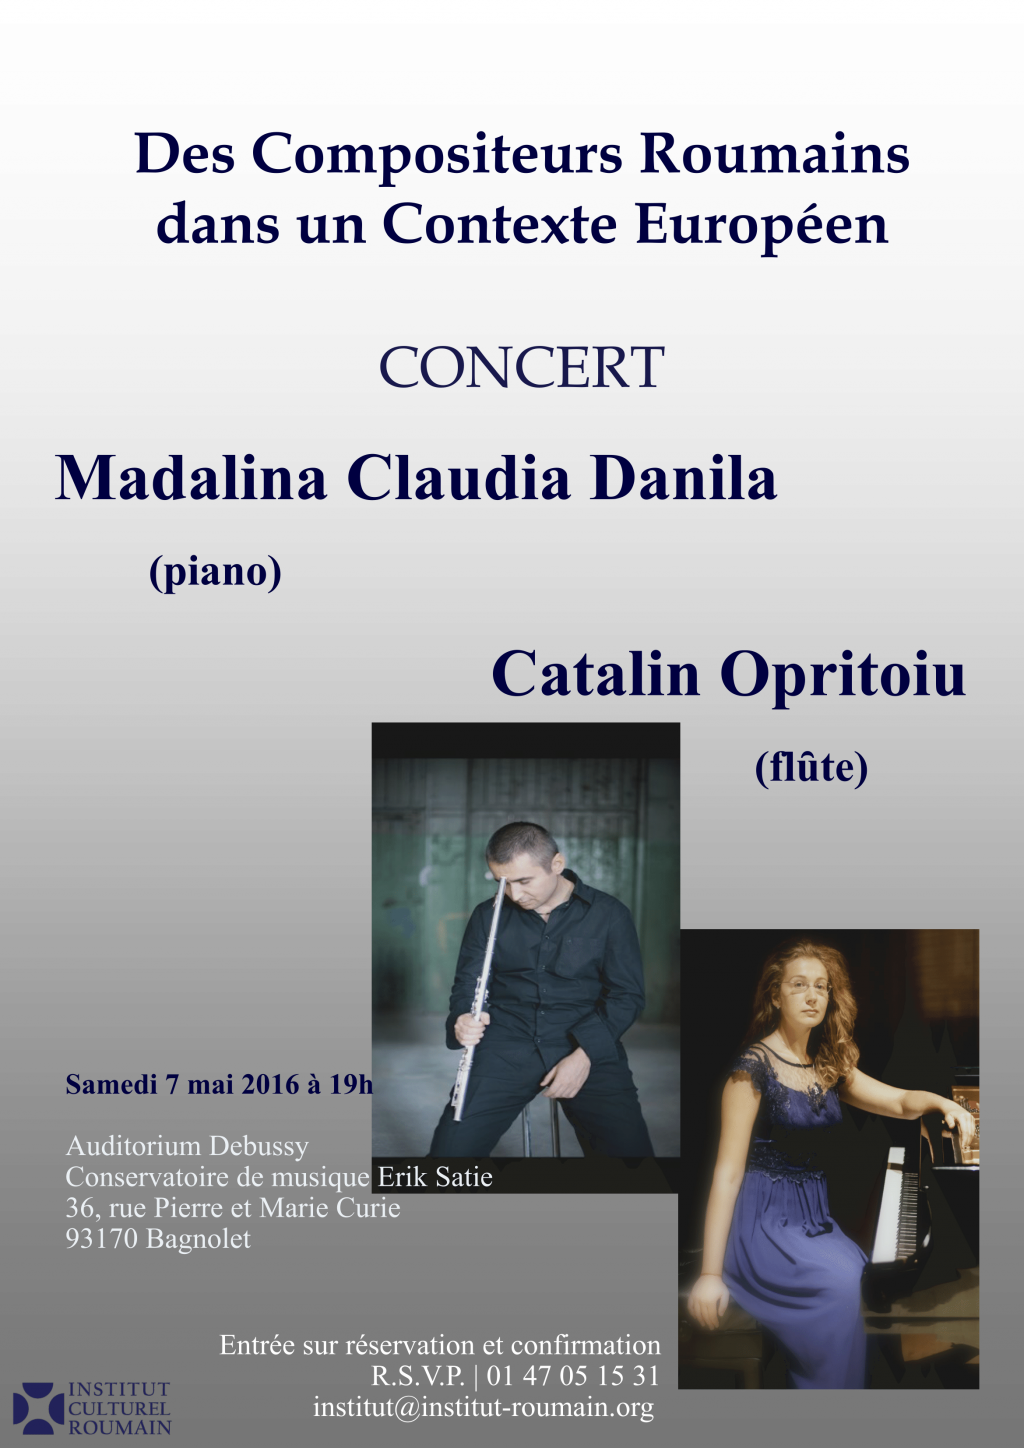 Muzică contemporană românească la Paris: Concert de flaut şi pian